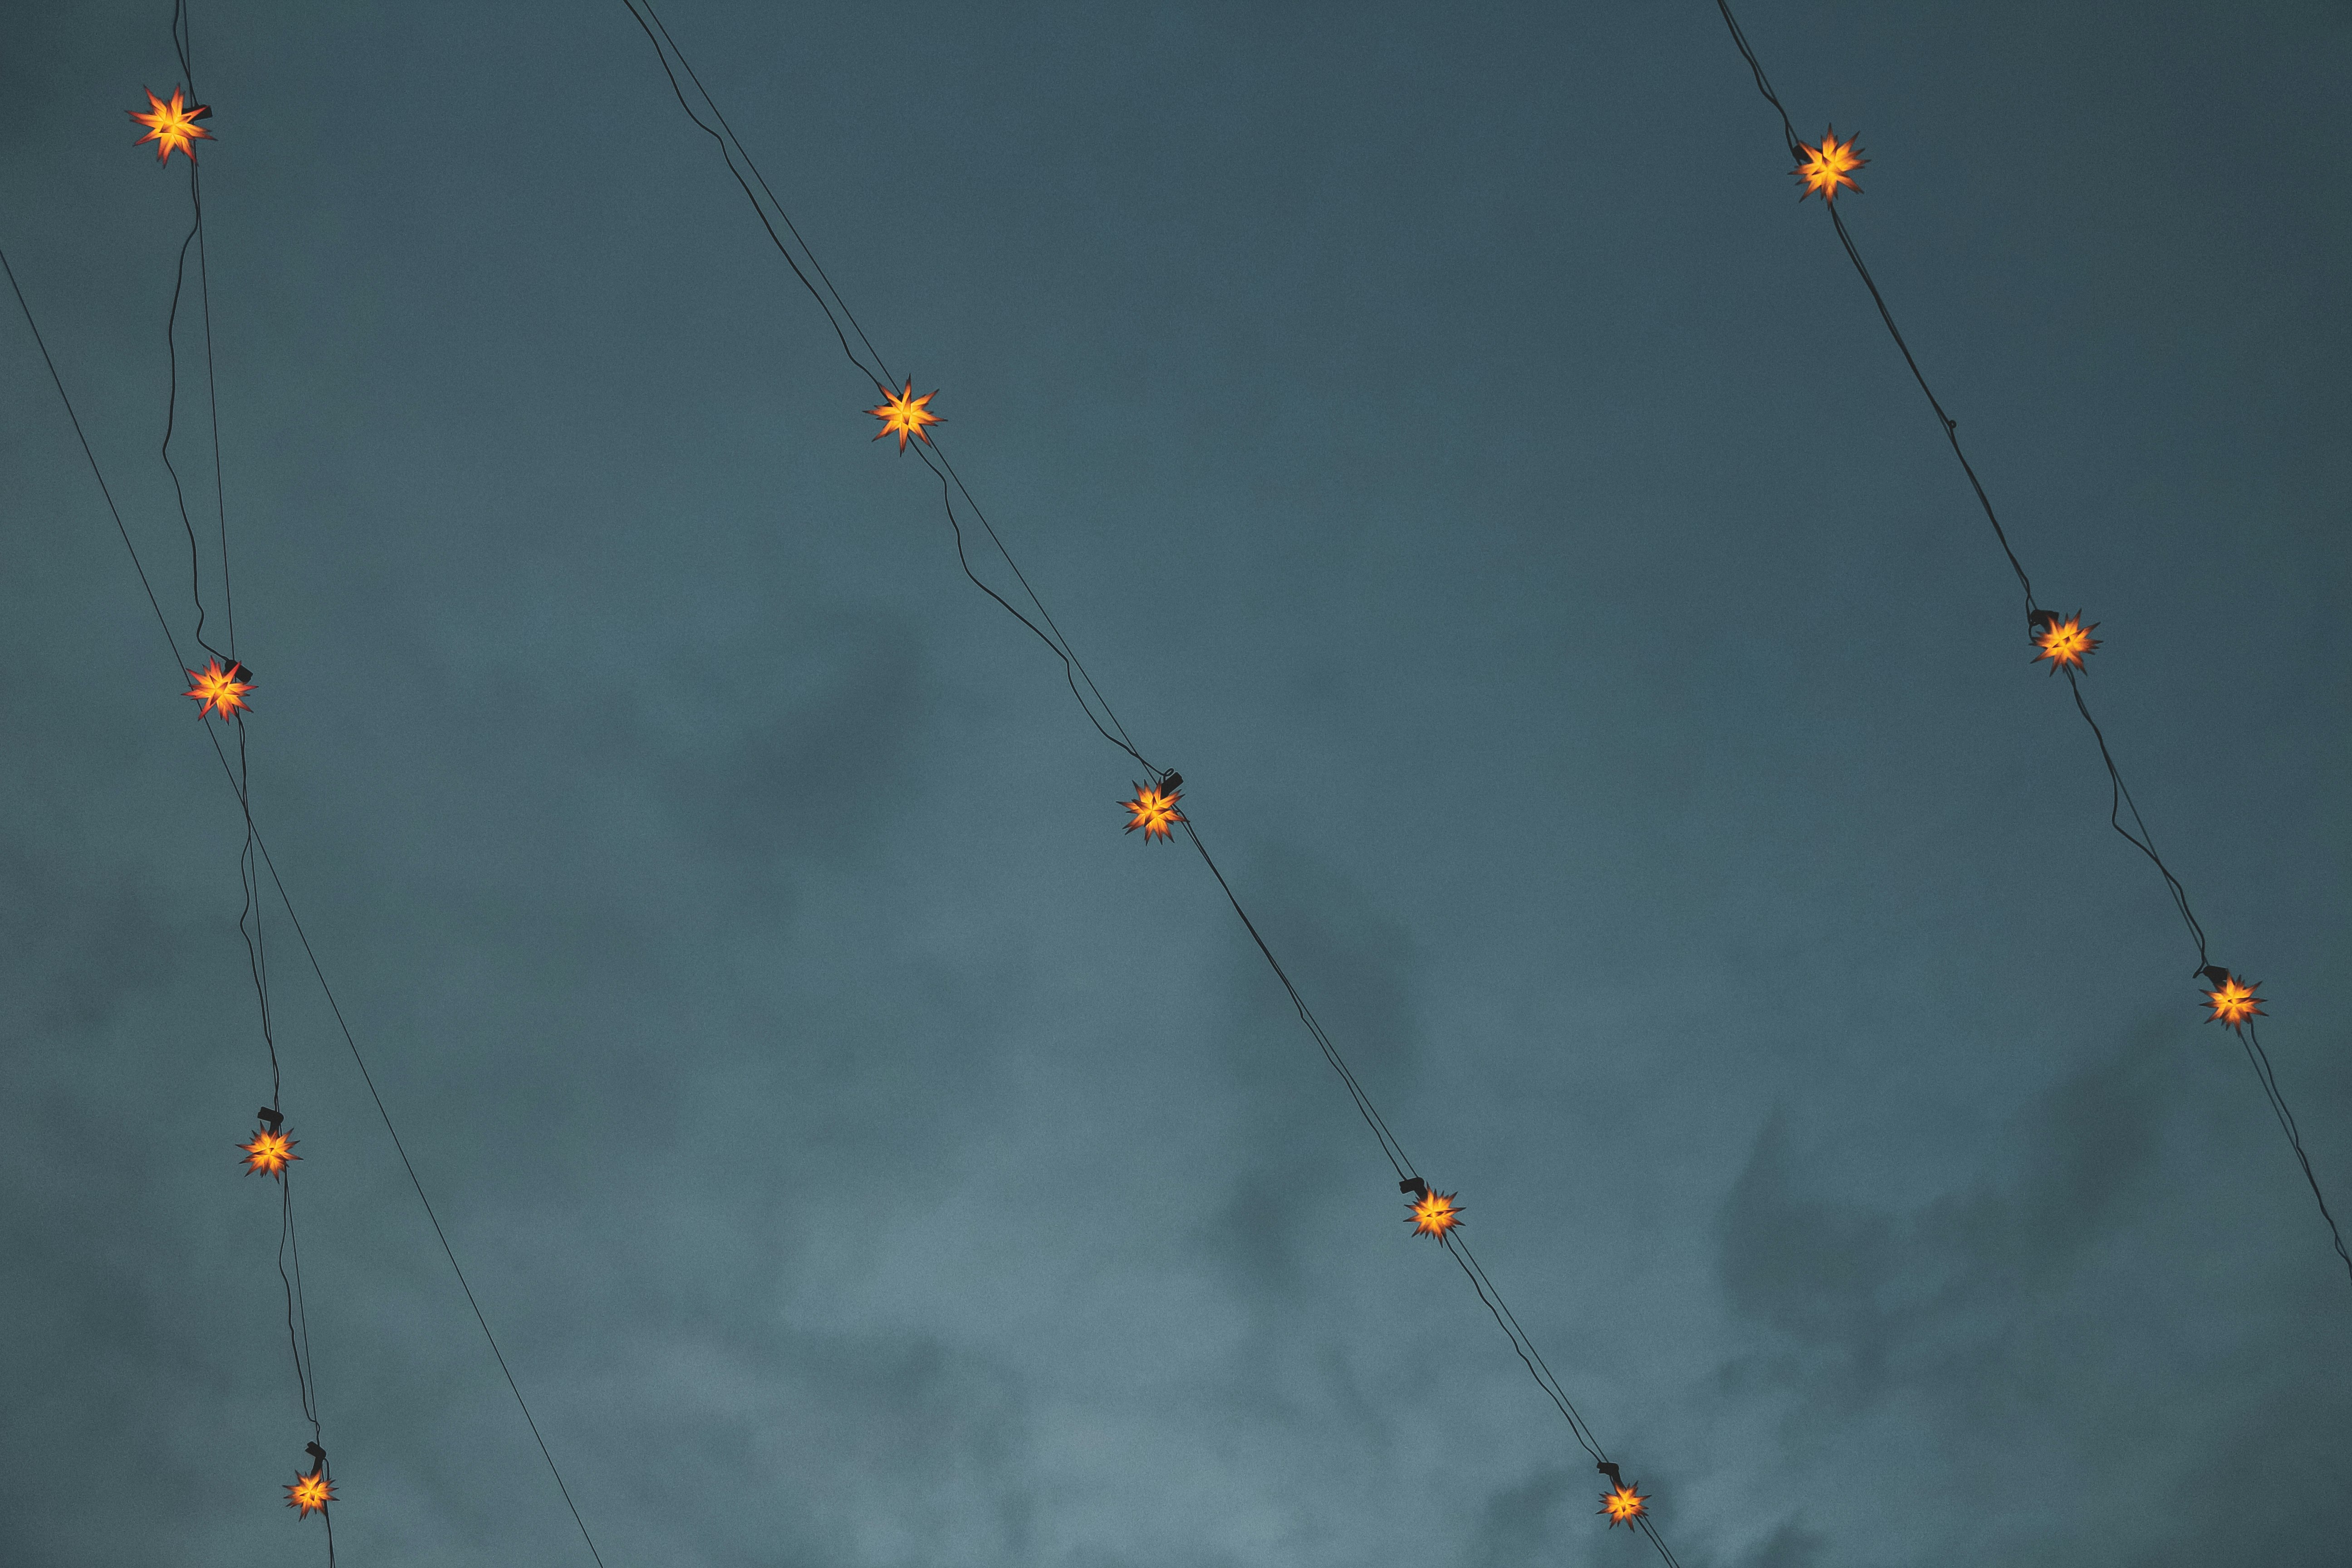 yellow and orange string lights under dark clouds